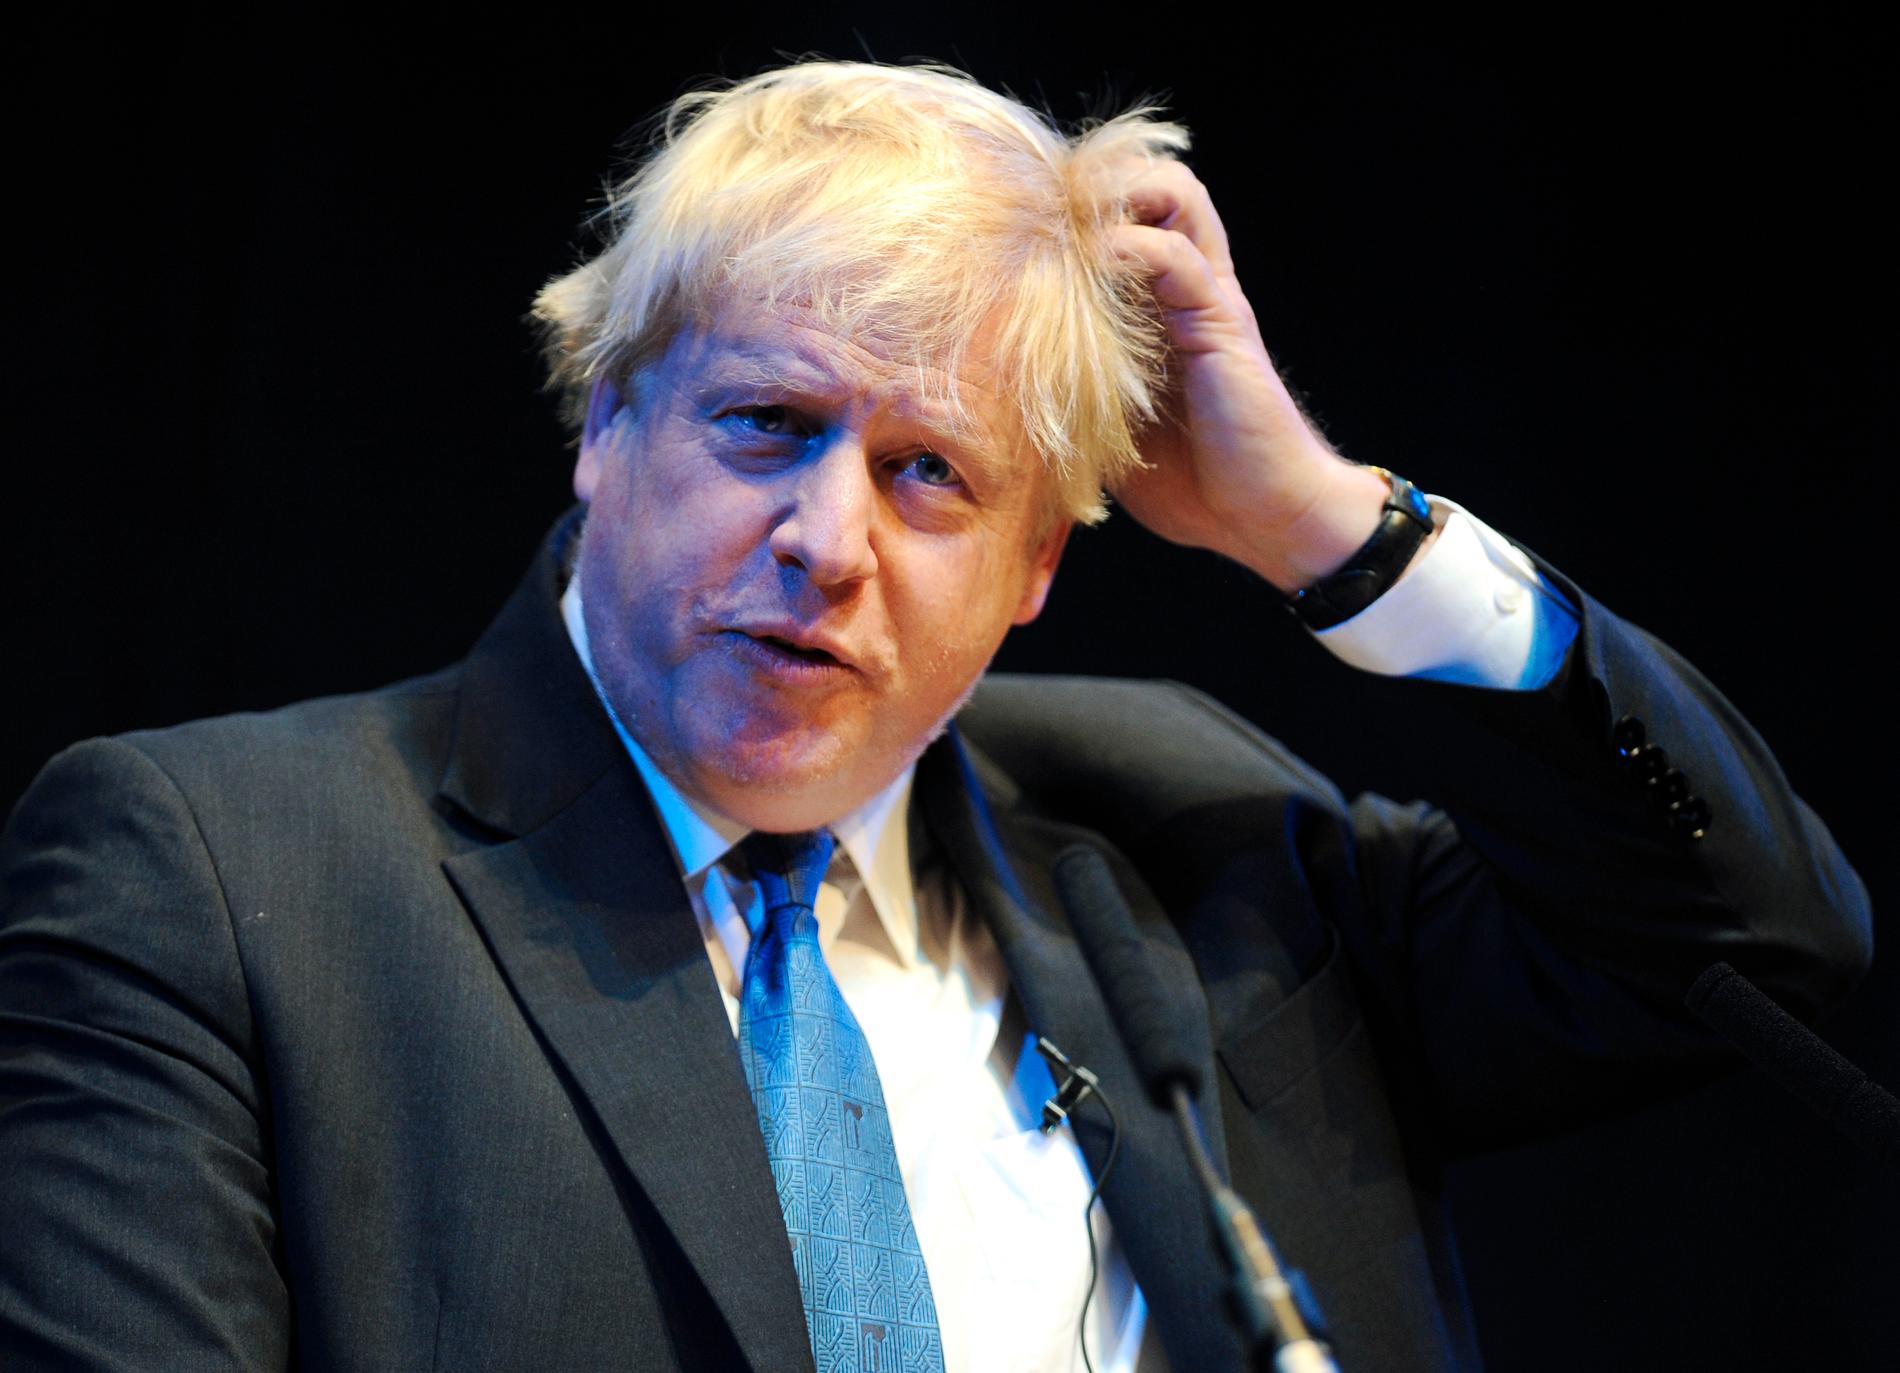 Oavsett vem av Johnson och Hunt som tar hem partiledarvalet, får Storbritannien snart sin 11:e premiärminister sedan andra världskriget som gått på Oxford.